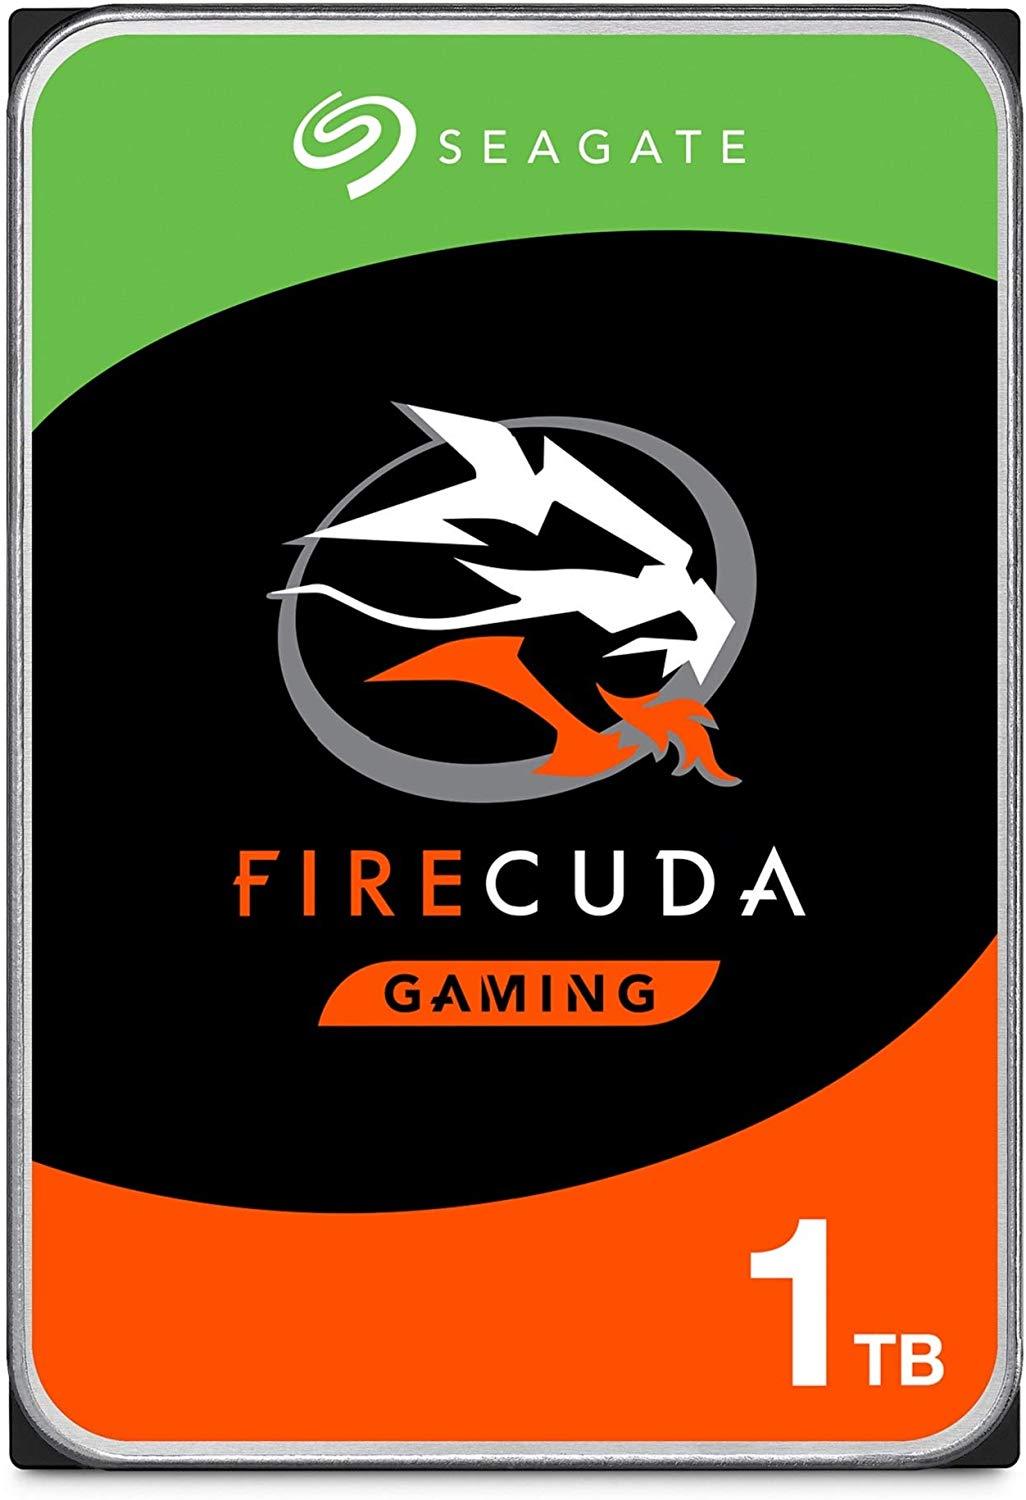 Seagate FireCuda Gaming 1TB 3.5